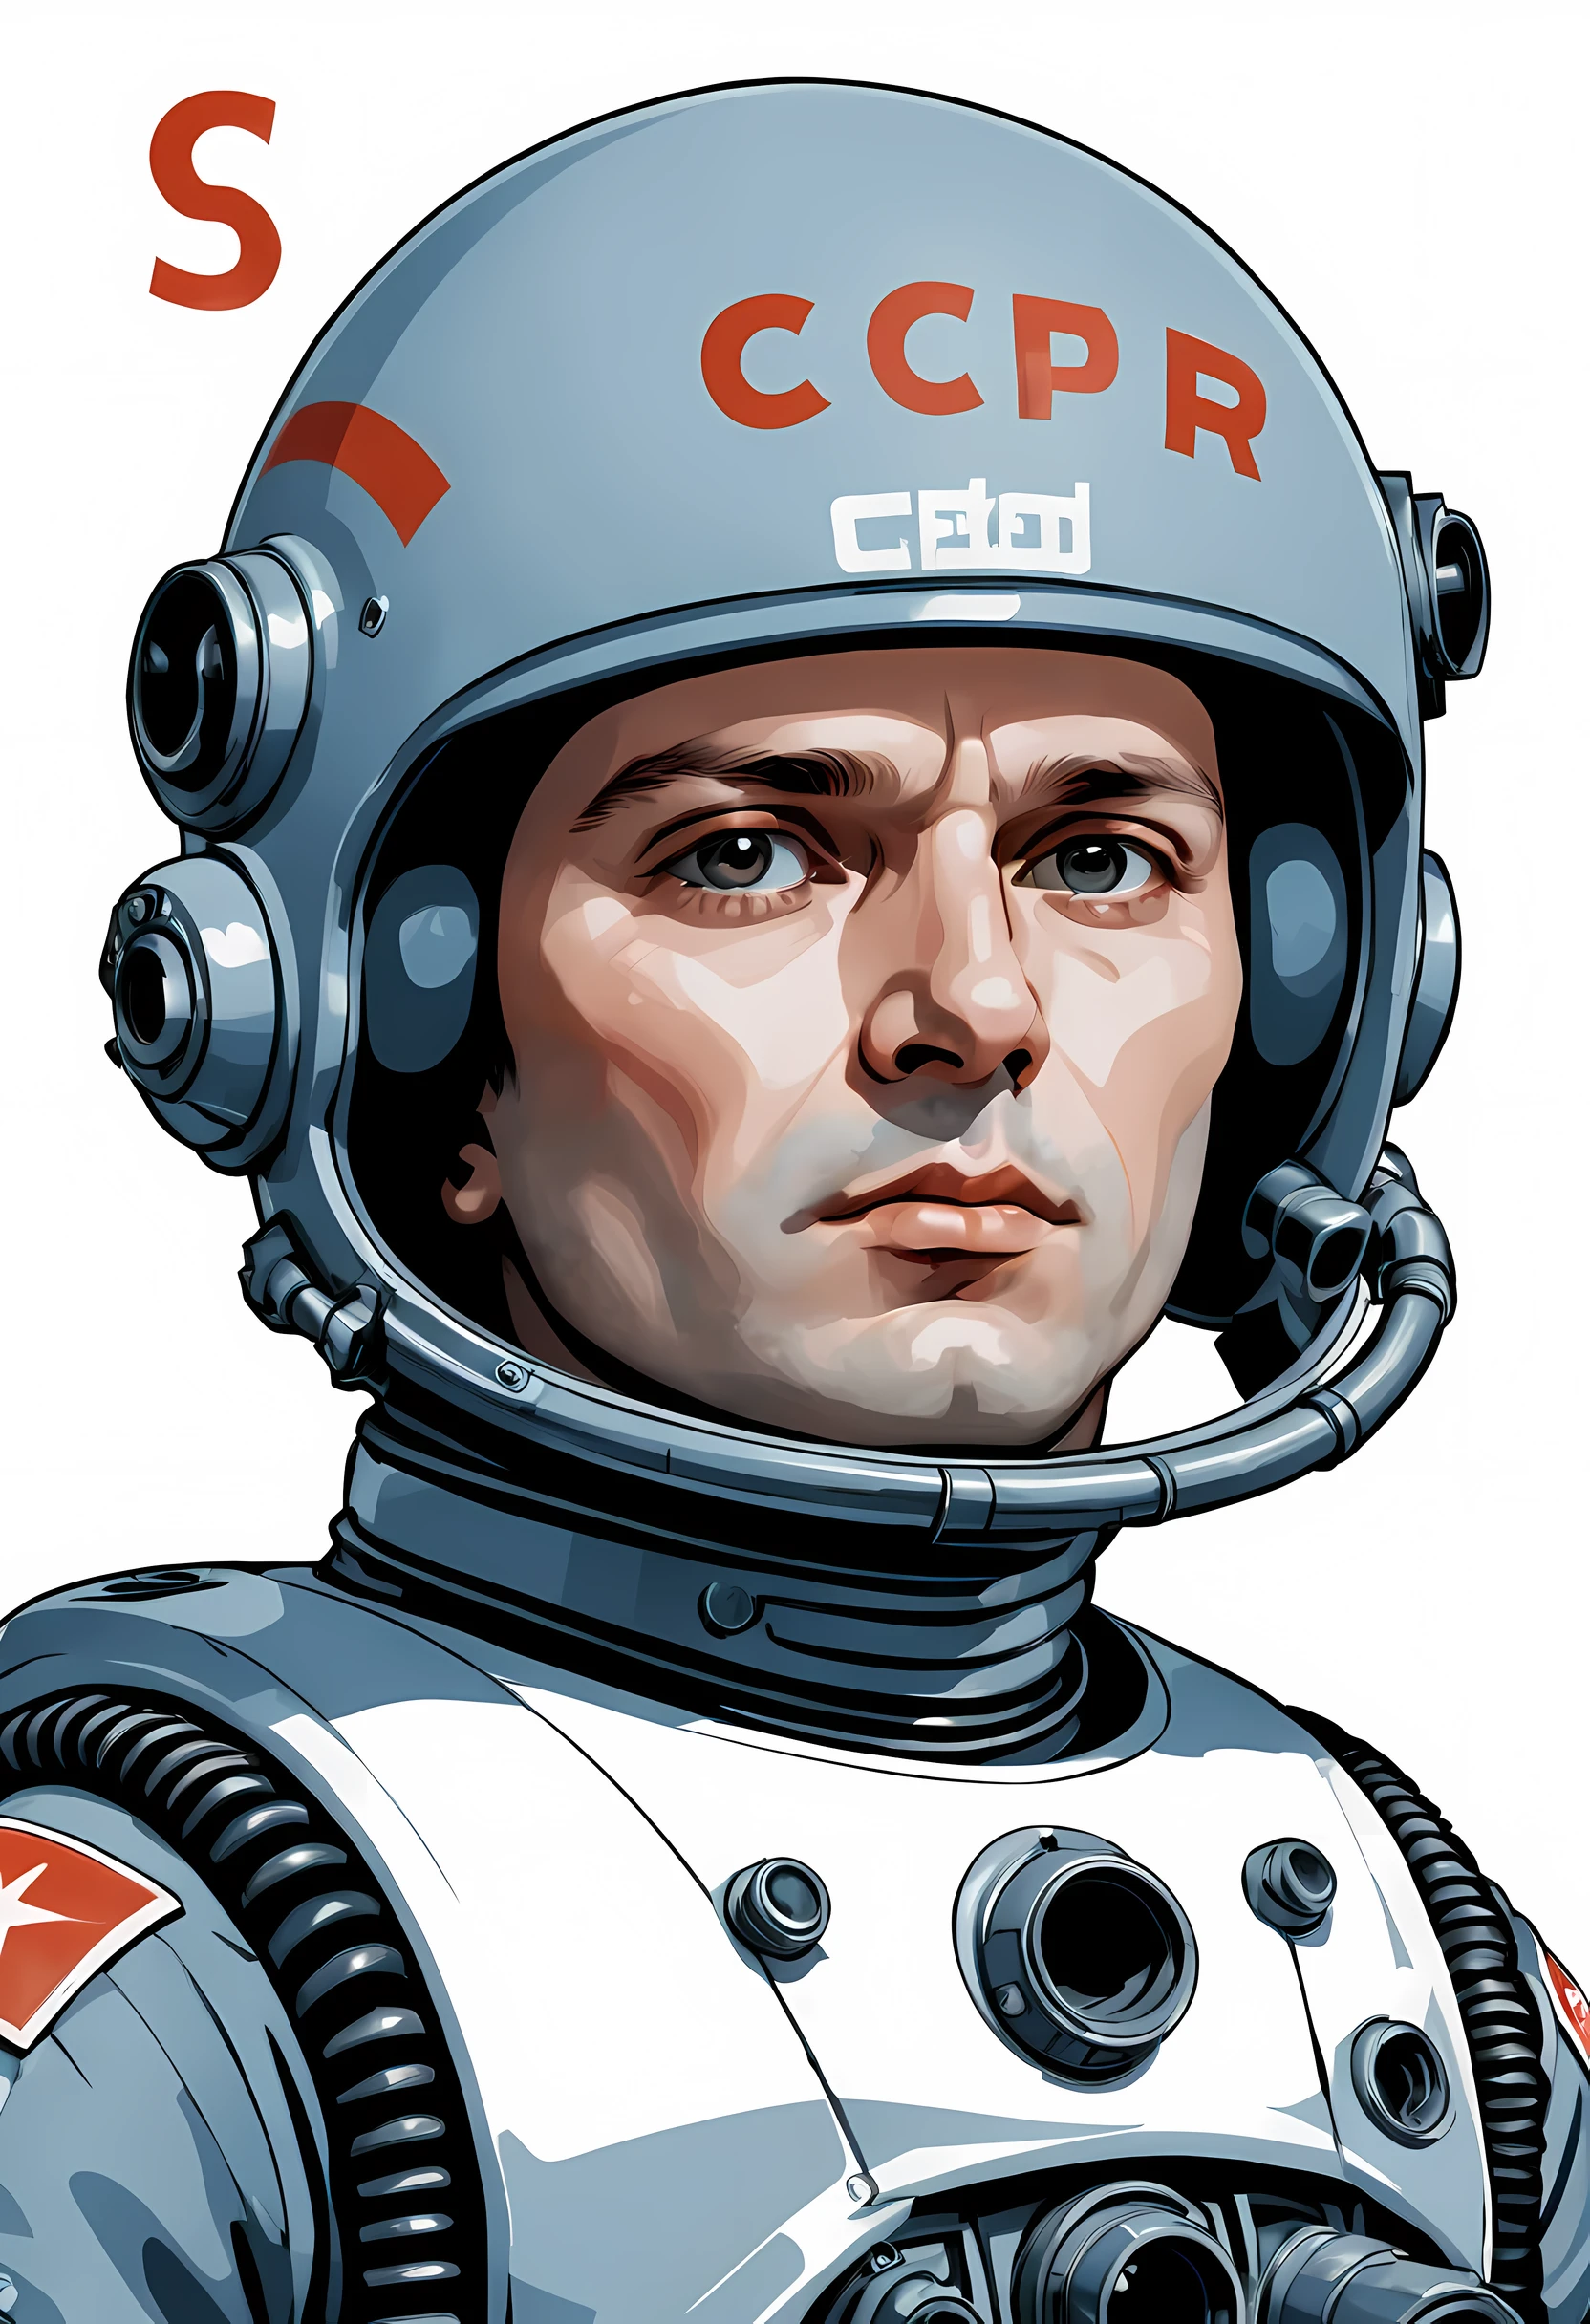 Kopf Porträt, UdSSR-Astronaut im Giger-Helm, Briefe "ussr" auf dem Helm, strenges Gesicht eines 35-jährigen Mannes, Blick unter den Augenbrauen, Hand mit einem fantastischen Blaster im Gesicht, Blasterlauf angehoben